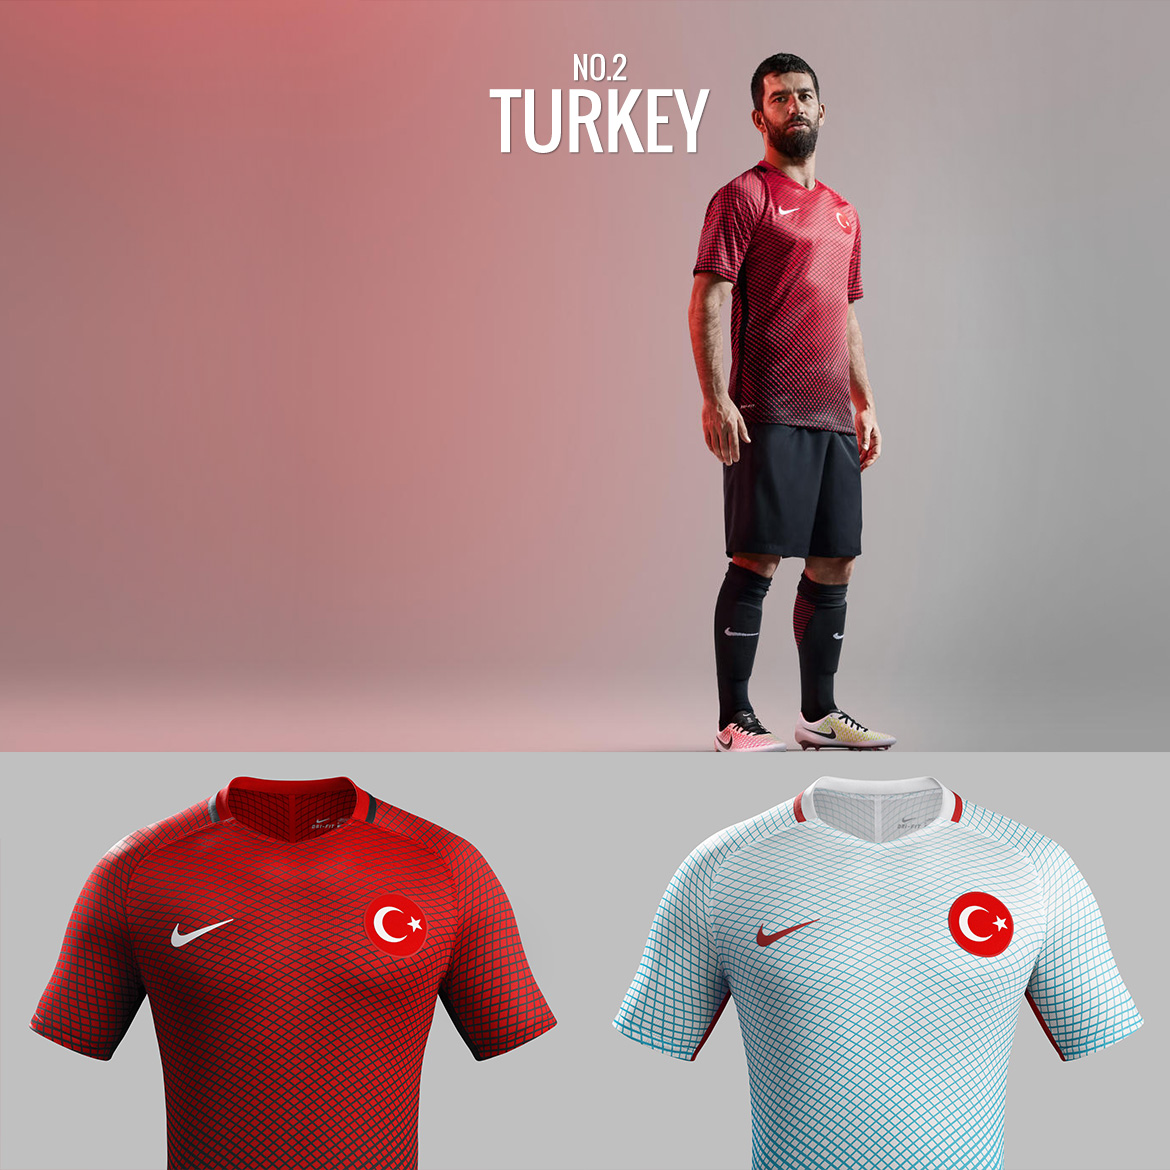 UEFA Euro 2016 - Turkey - Football Kit Design